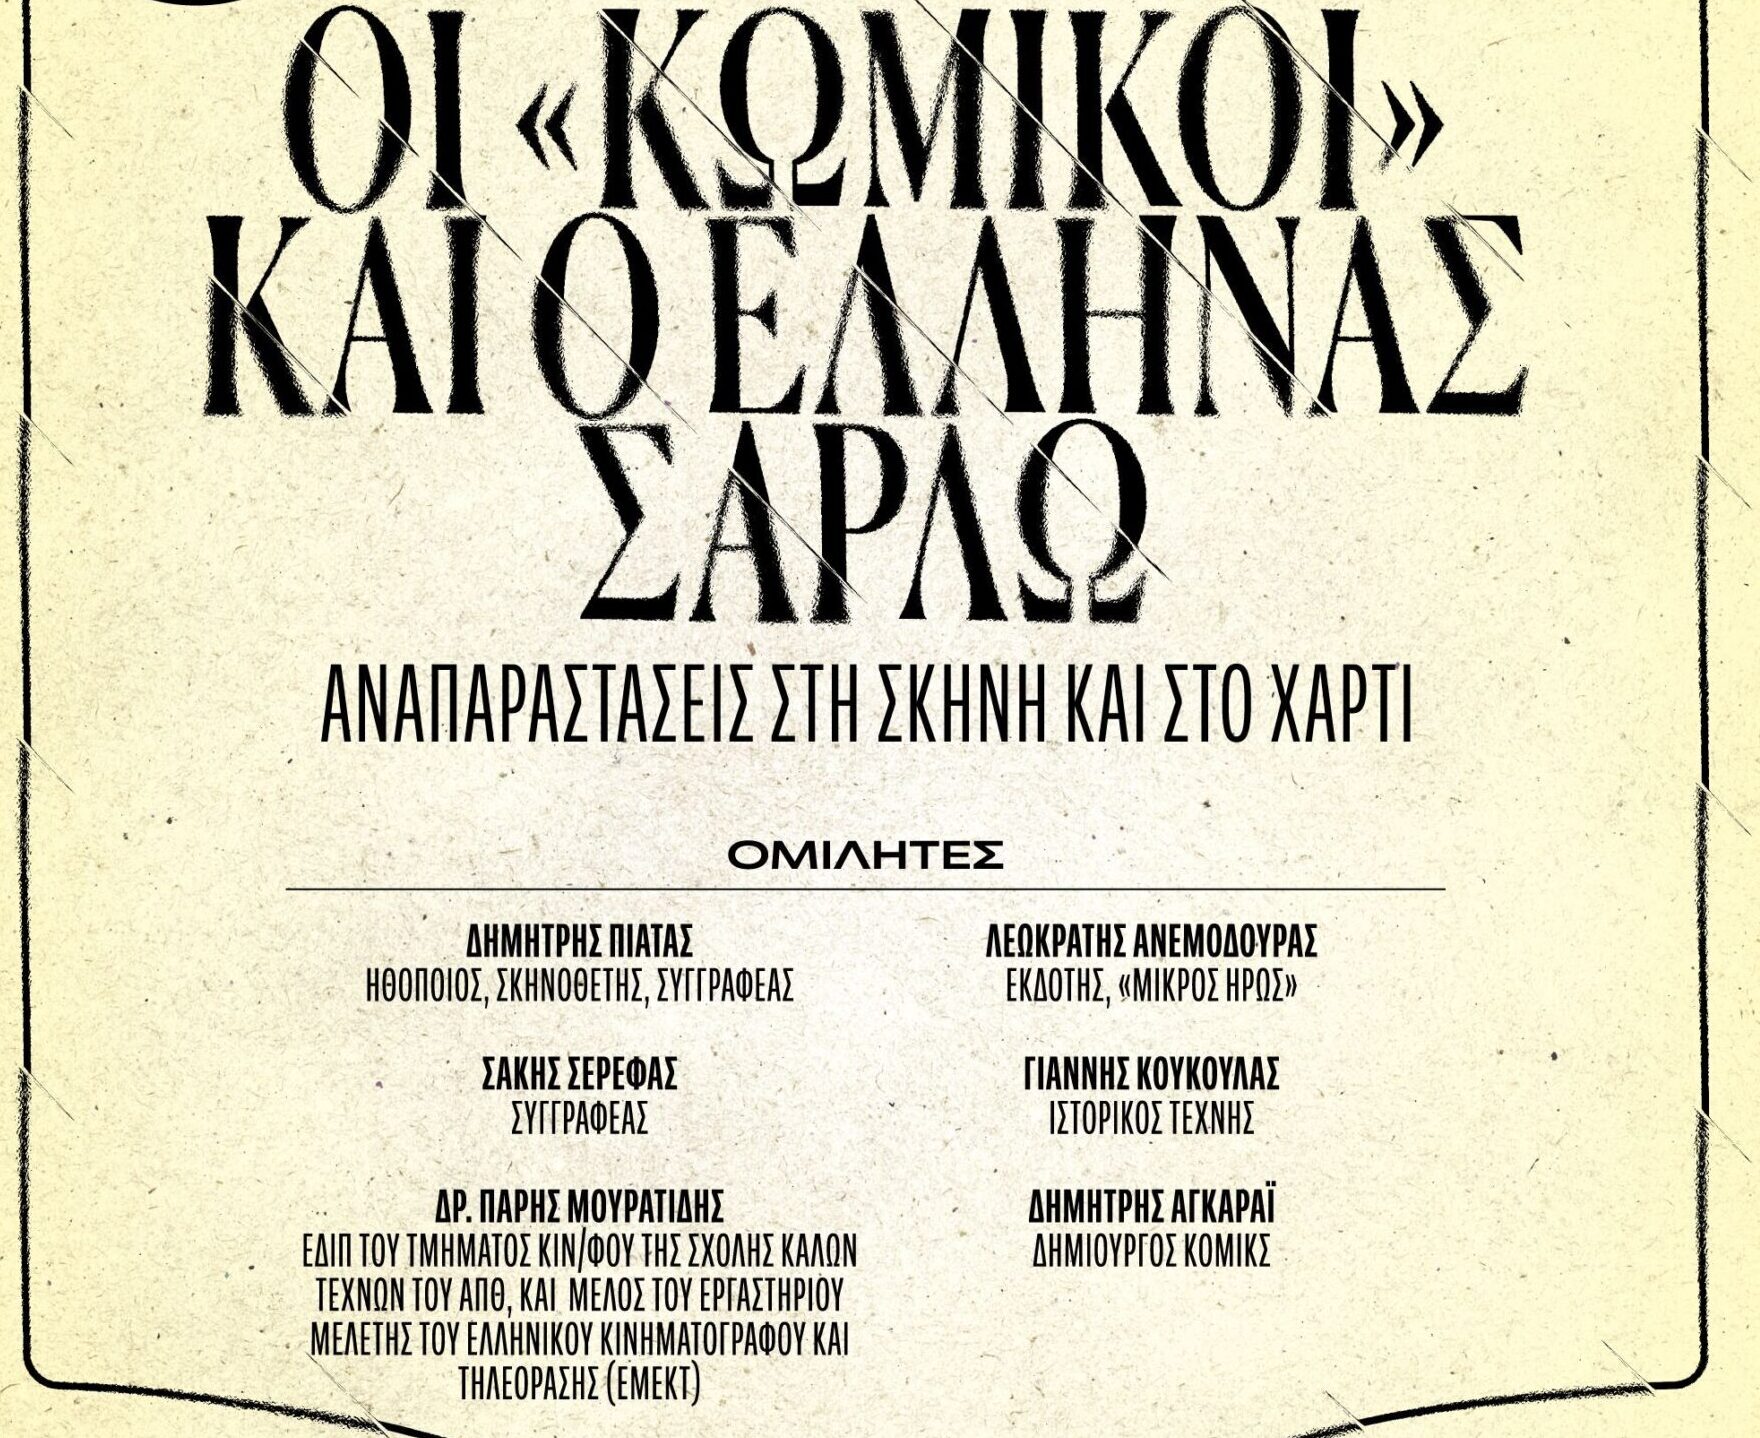 Θεσσαλονίκη: «Οι Κωμικοί και ο Έλληνας Σαρλώ: αναπαραστάσεις στη σκηνή και στο χαρτί»